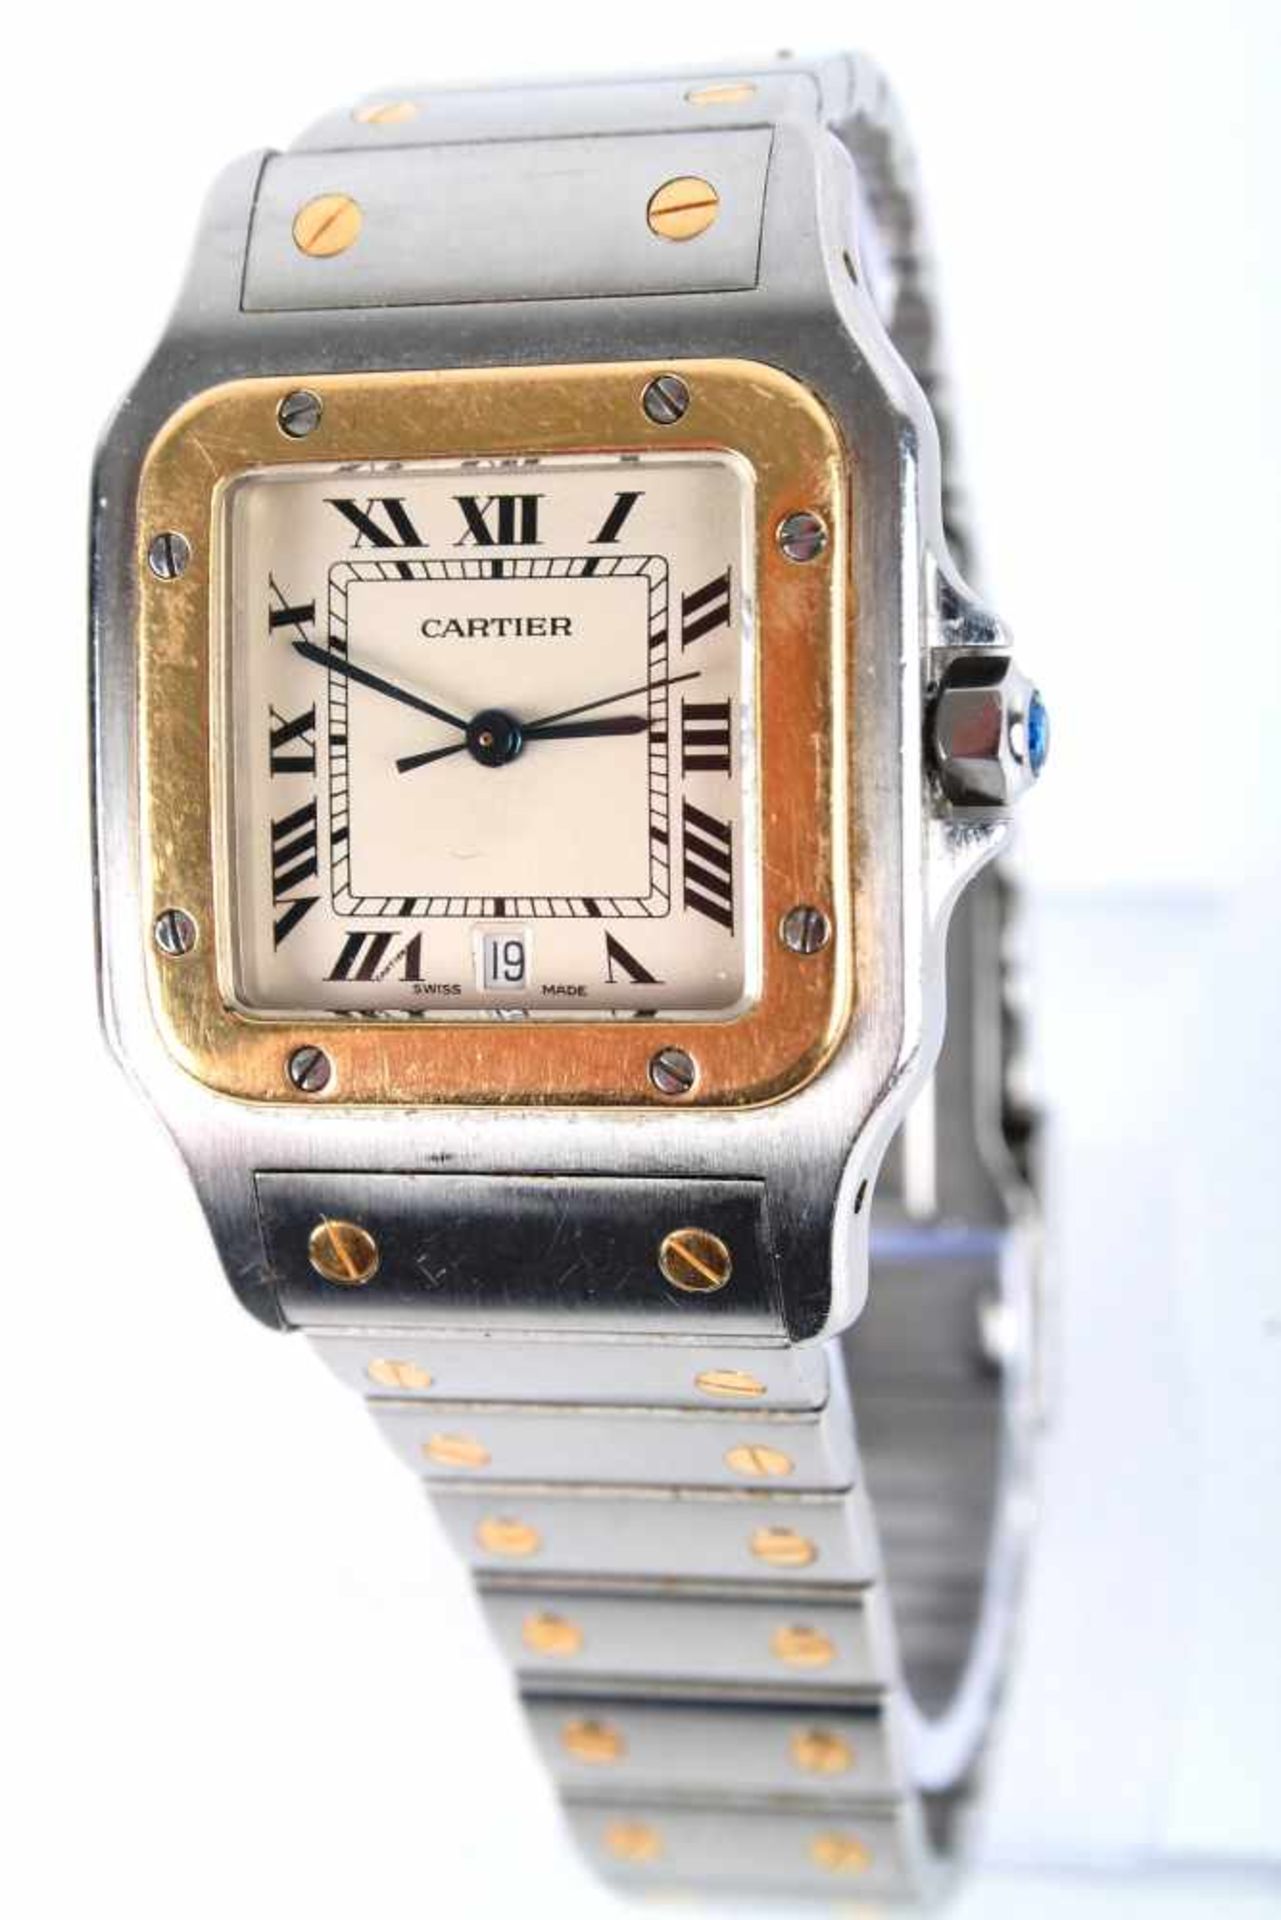 Cartier Santos Galbee Herrenuhr Armbanduhr Stahl/Gold 750, men's watch steel / 18K gold,